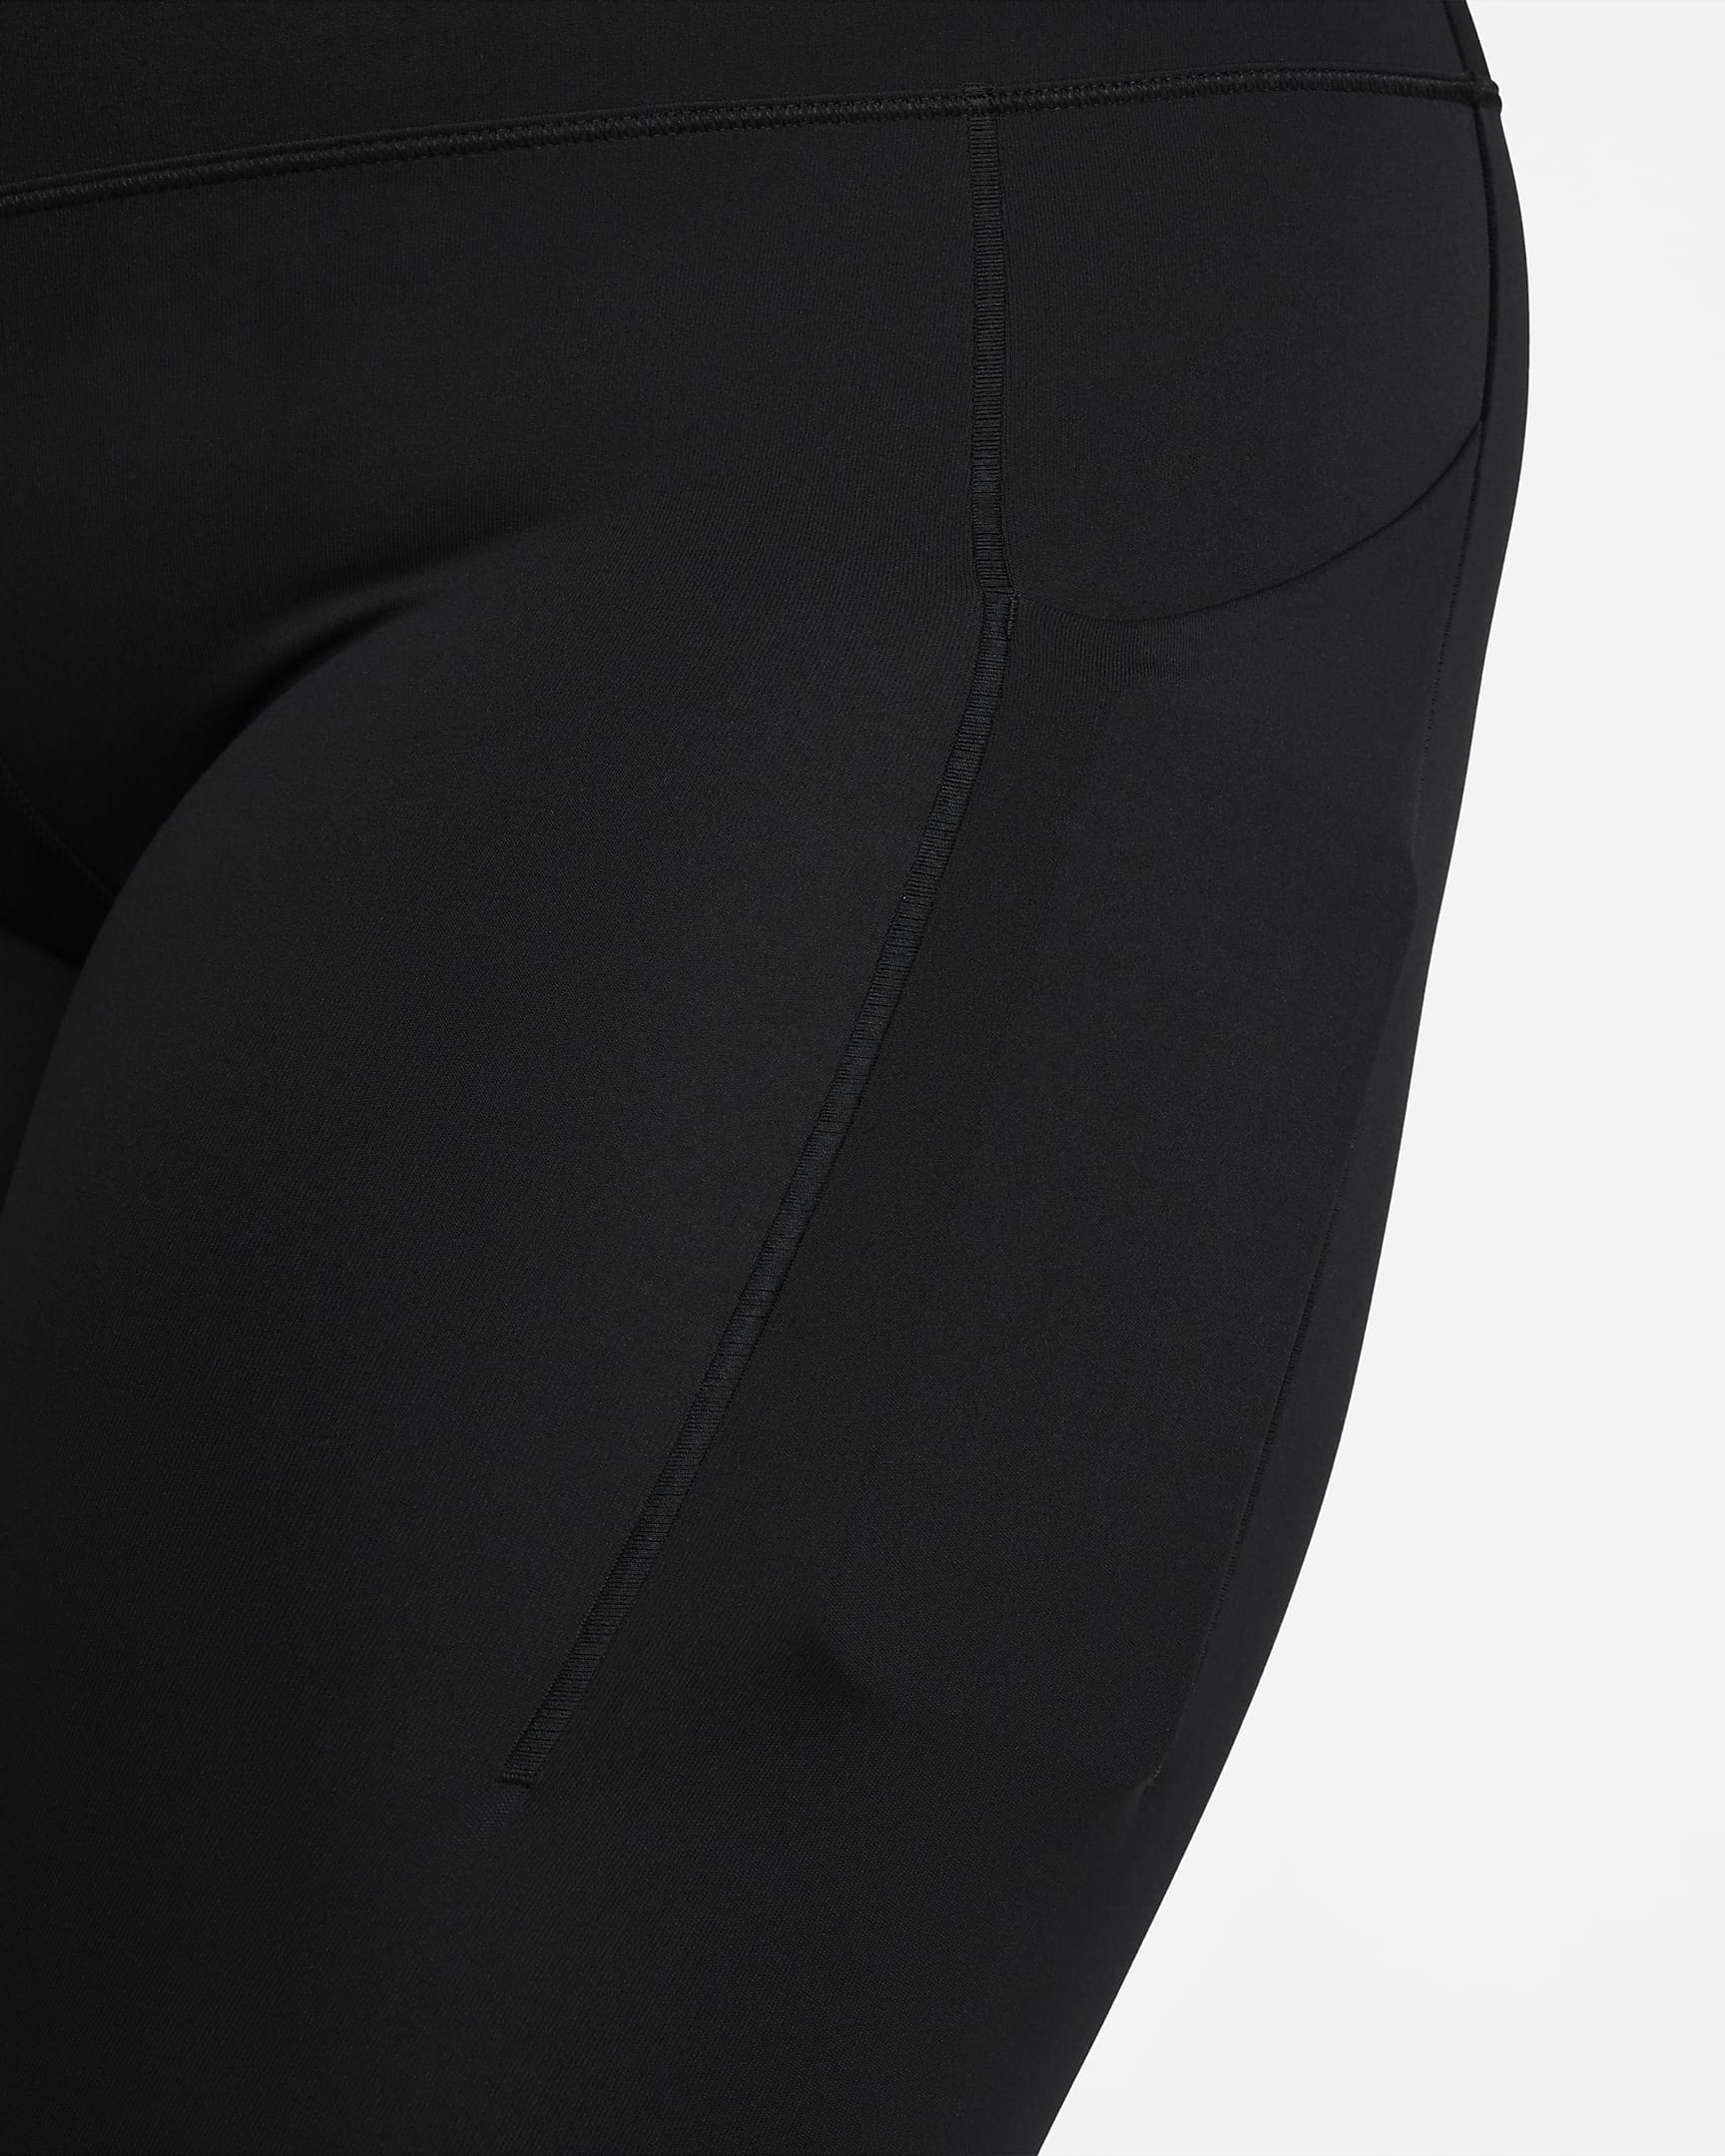 Nike Universa 7/8-Leggings mit mittlerem Halt, mittelhohem Bund und Taschen für Damen - Schwarz/Schwarz